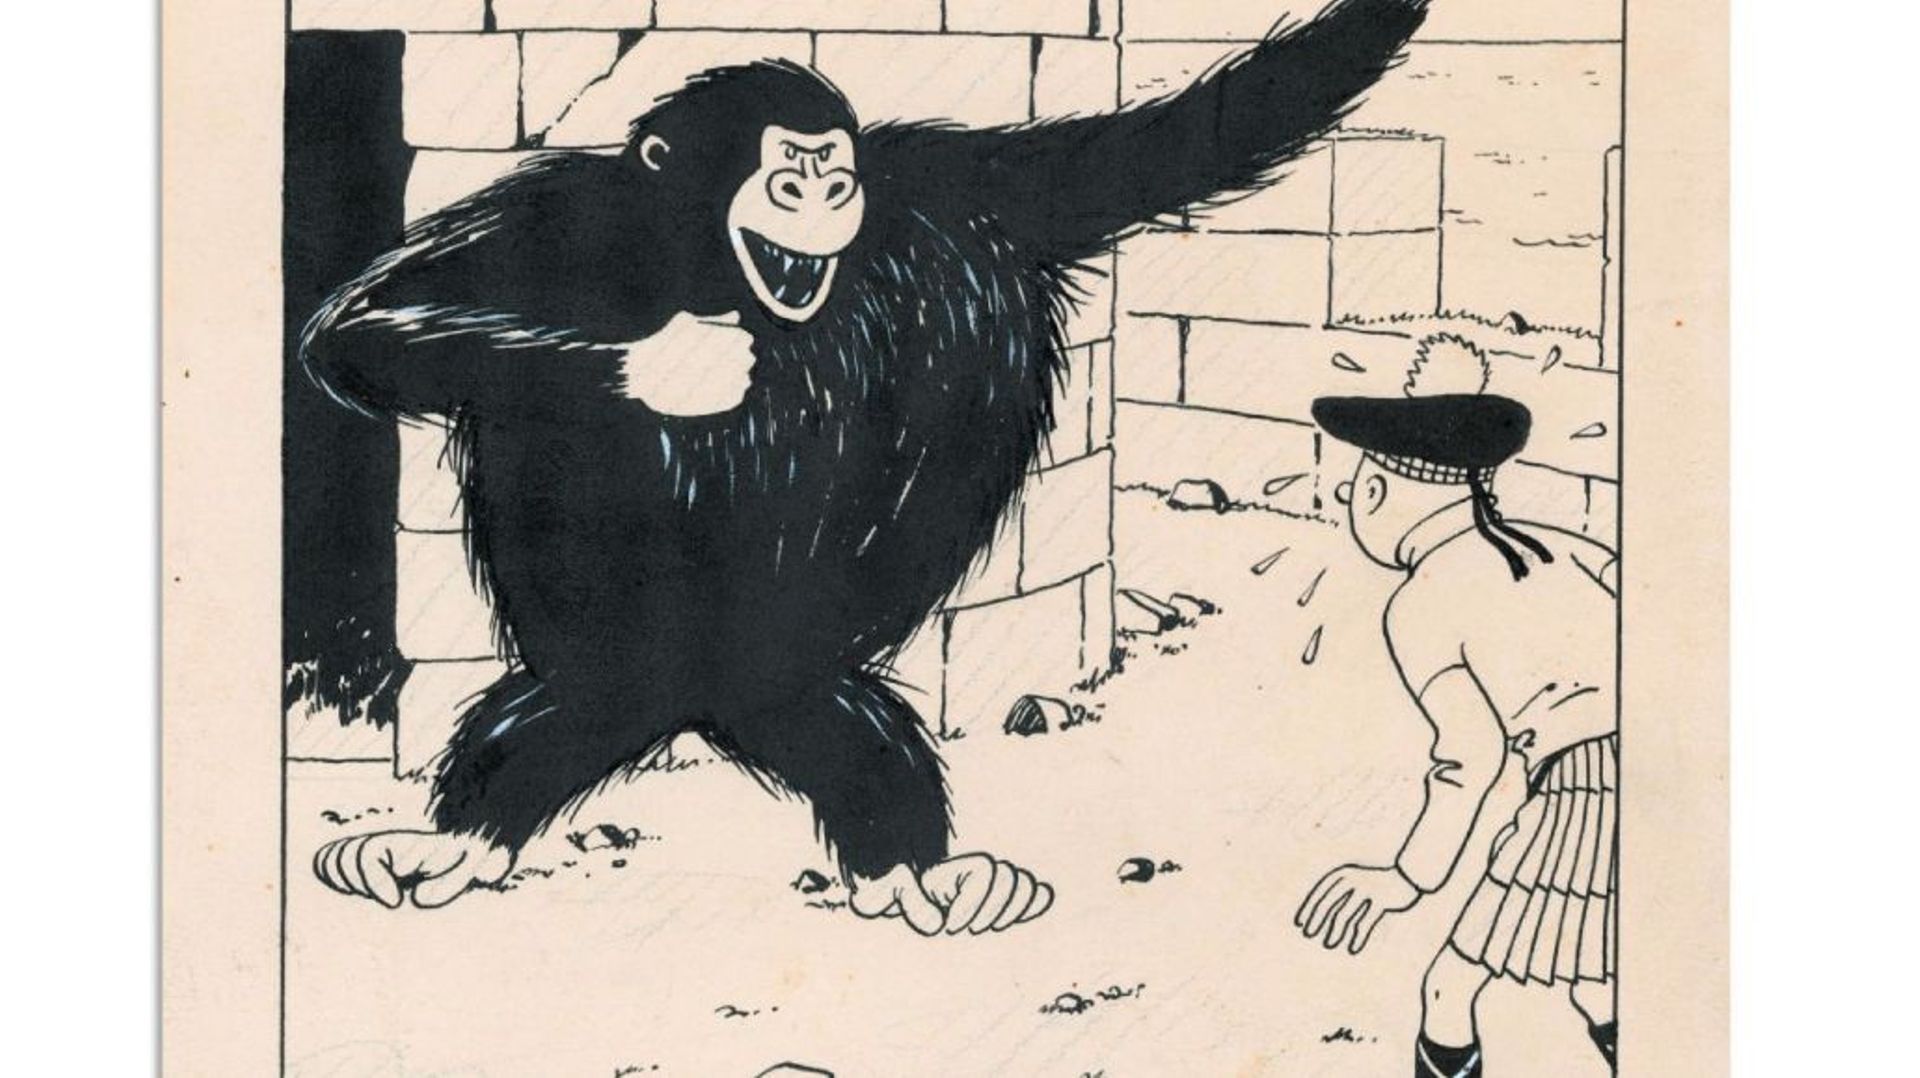 Le dessin qui représente le jeune reporter en costume traditionnel écossais face au gorille de "L'île noire" est estimé entre 270 000 et 300 000 euros.